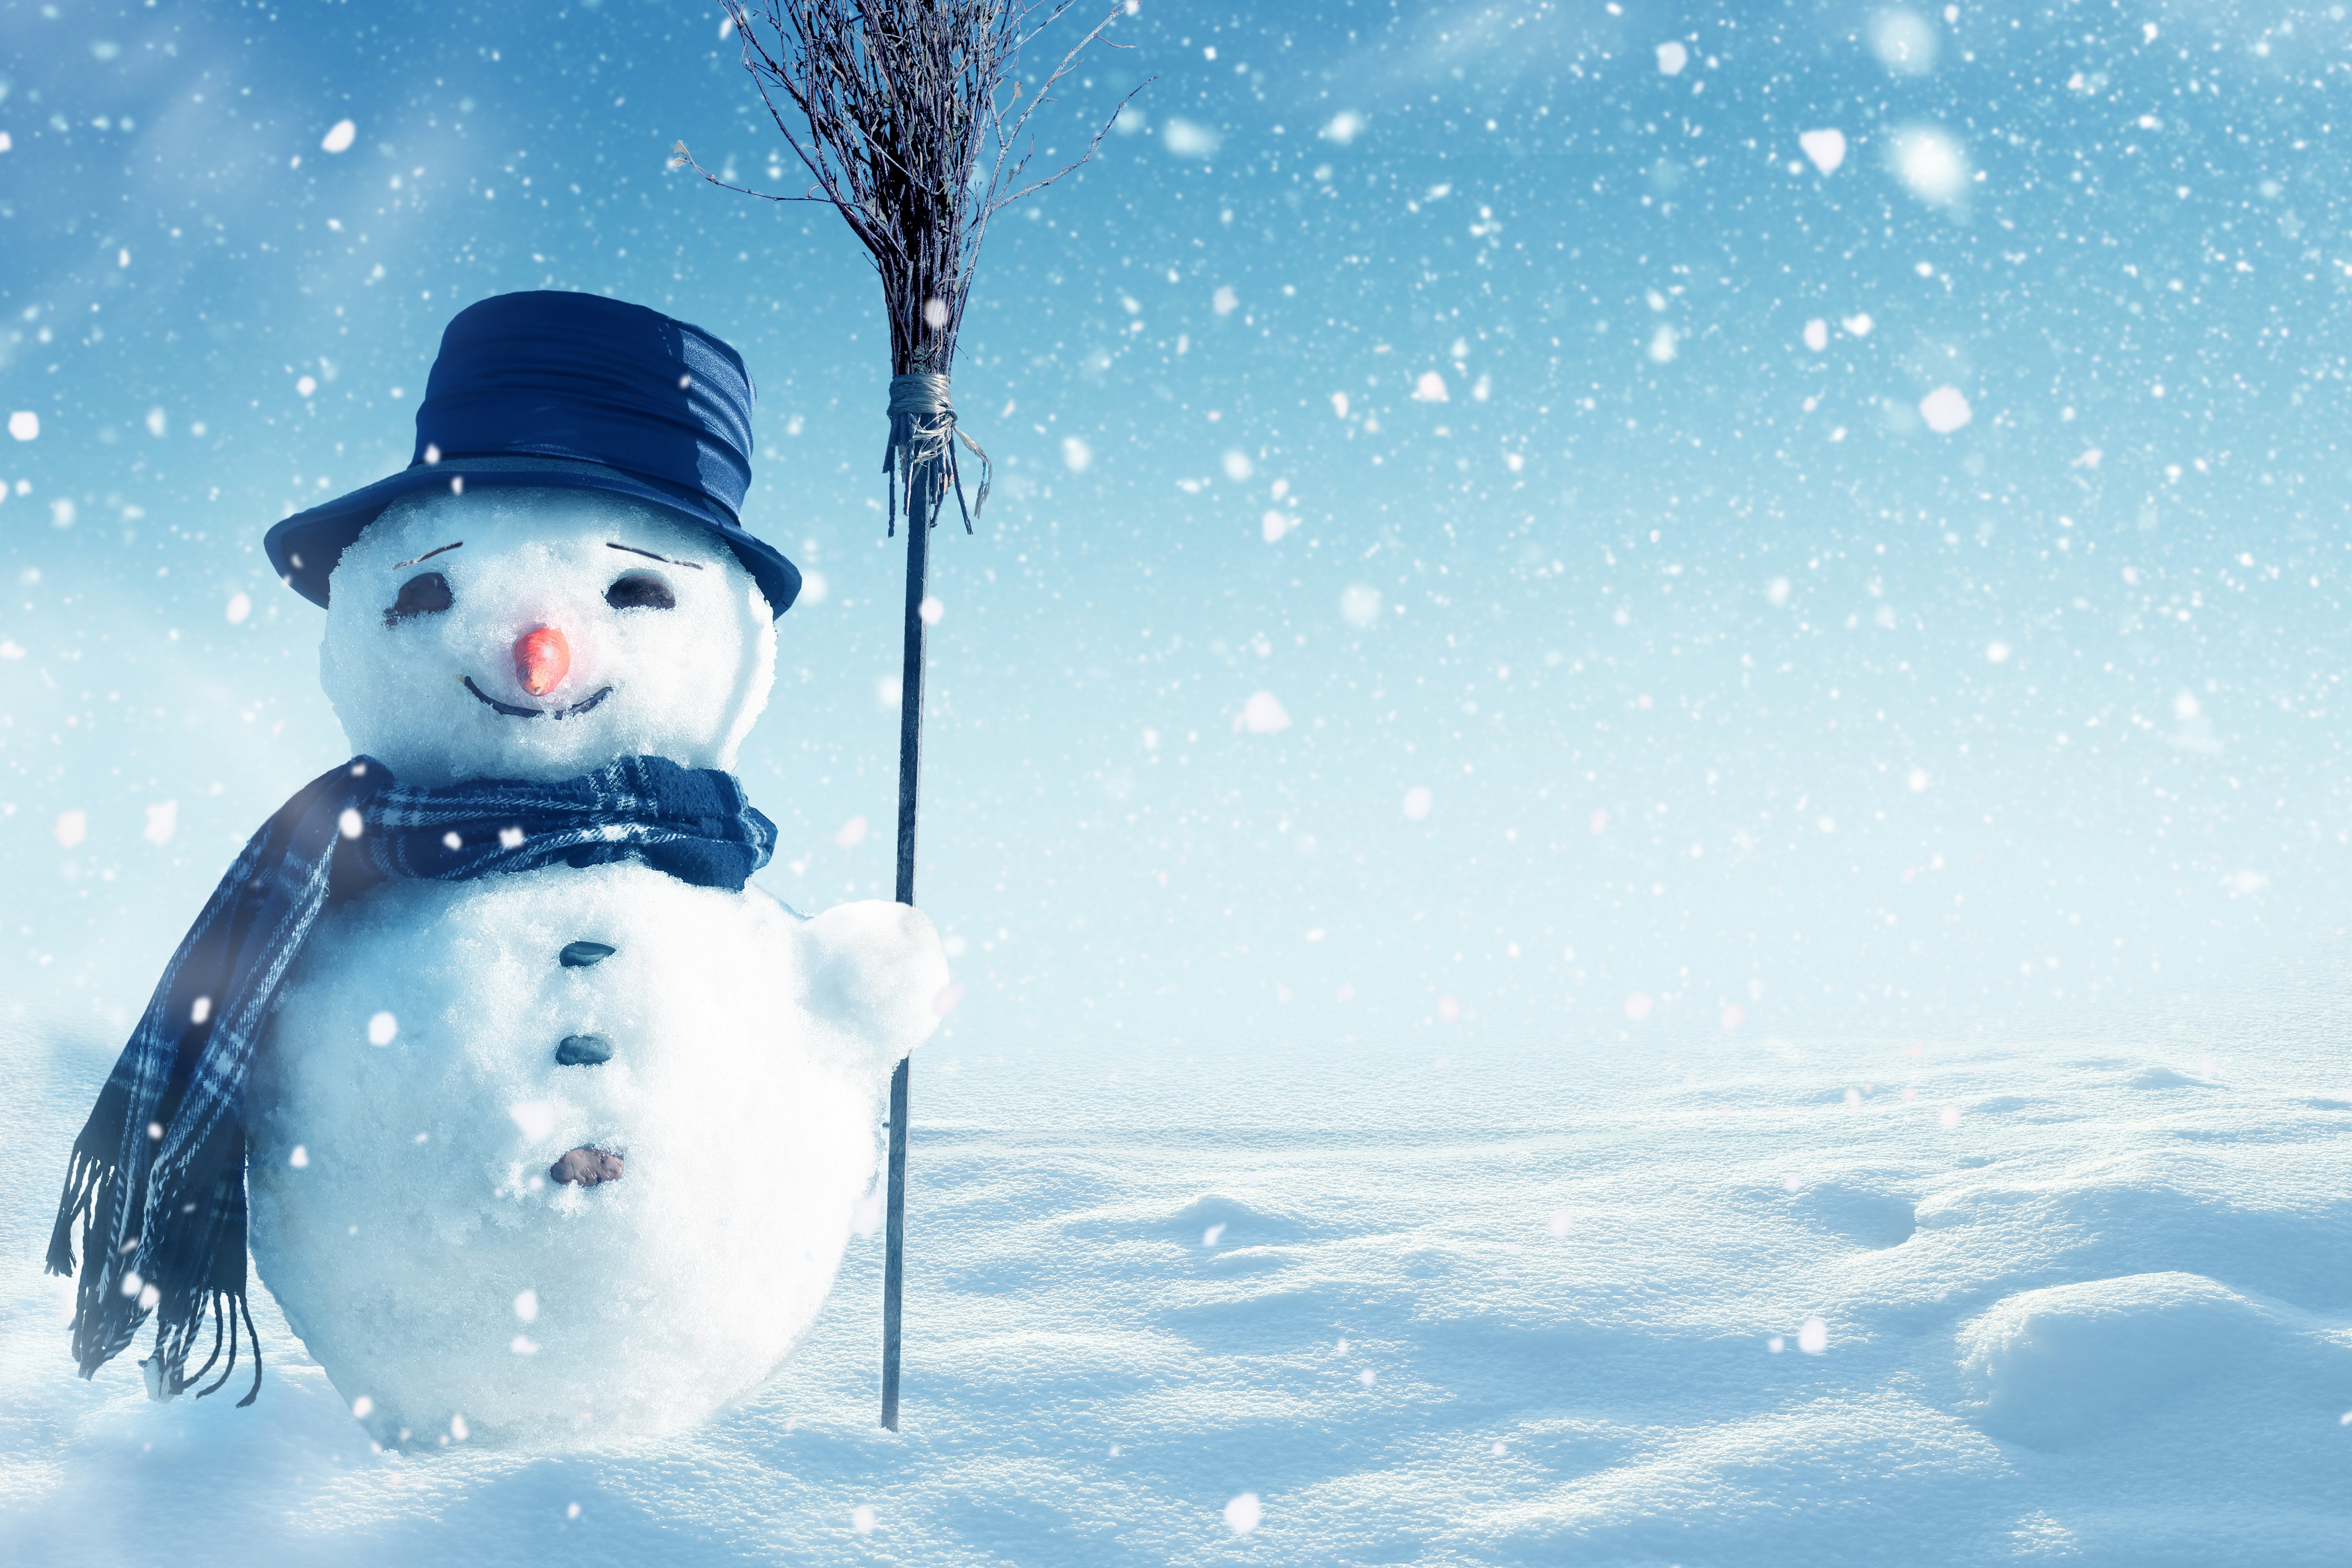 Скачать обои бесплатно Снег, Снеговик, Художественные картинка на рабочий стол ПК